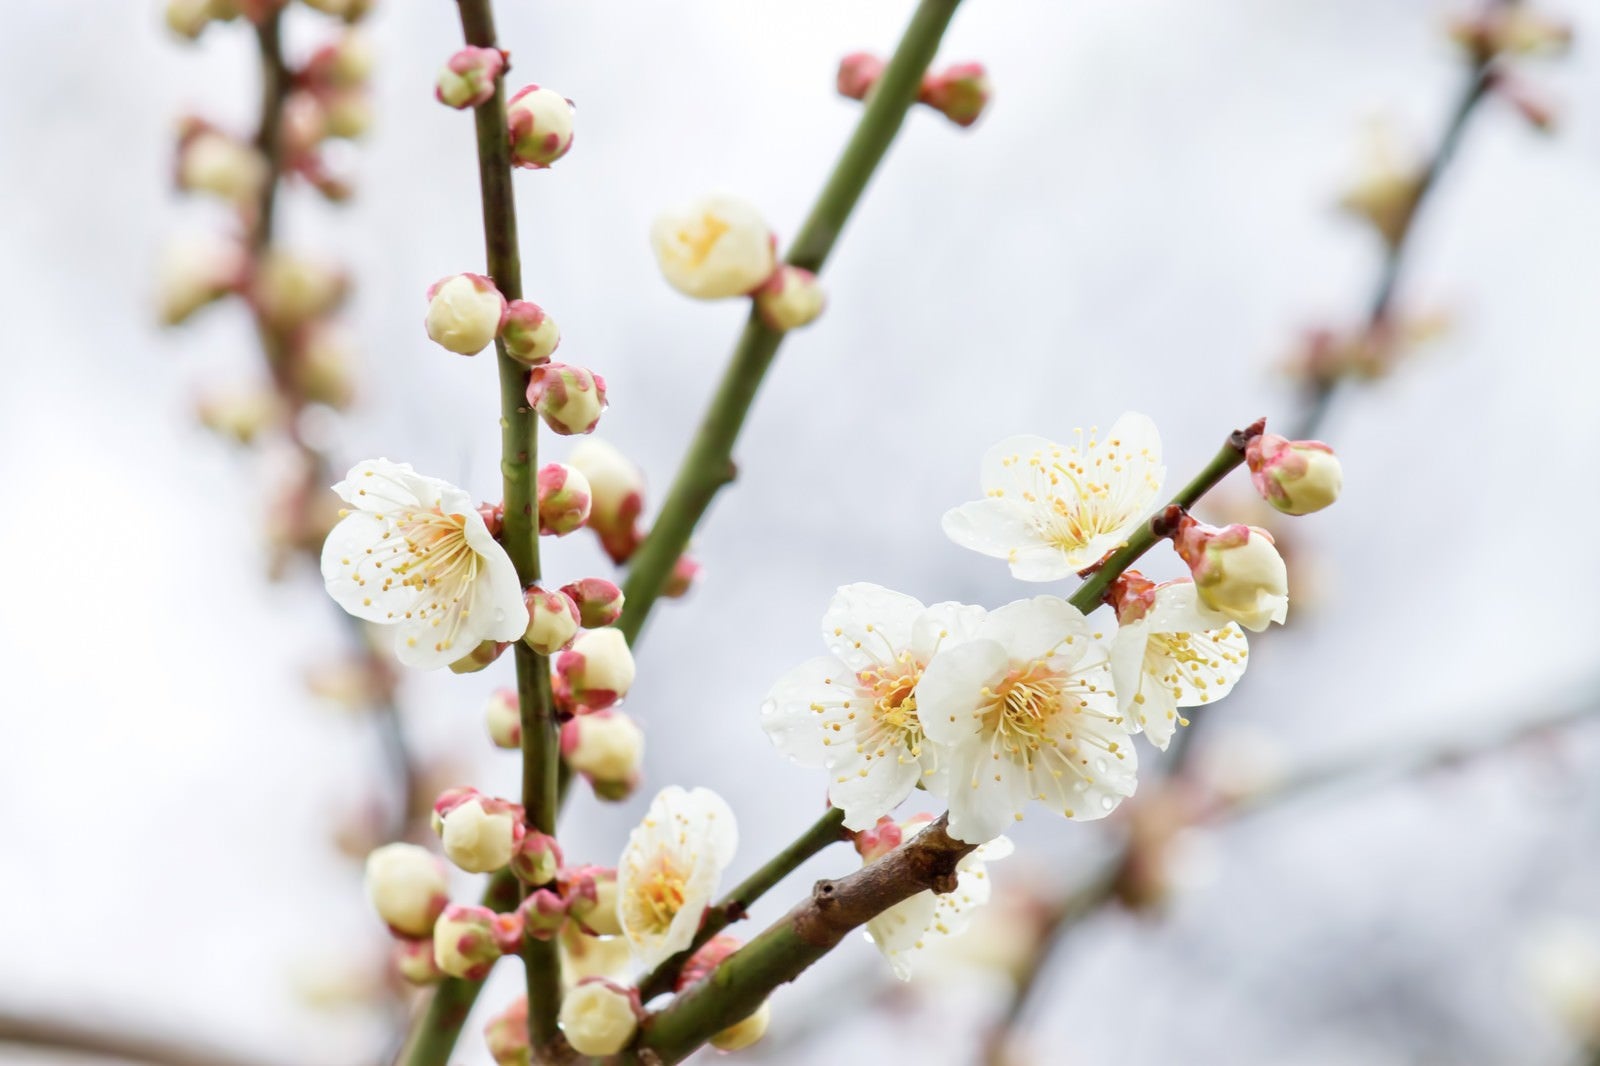 「枝から生える梅の花と蕾」の写真